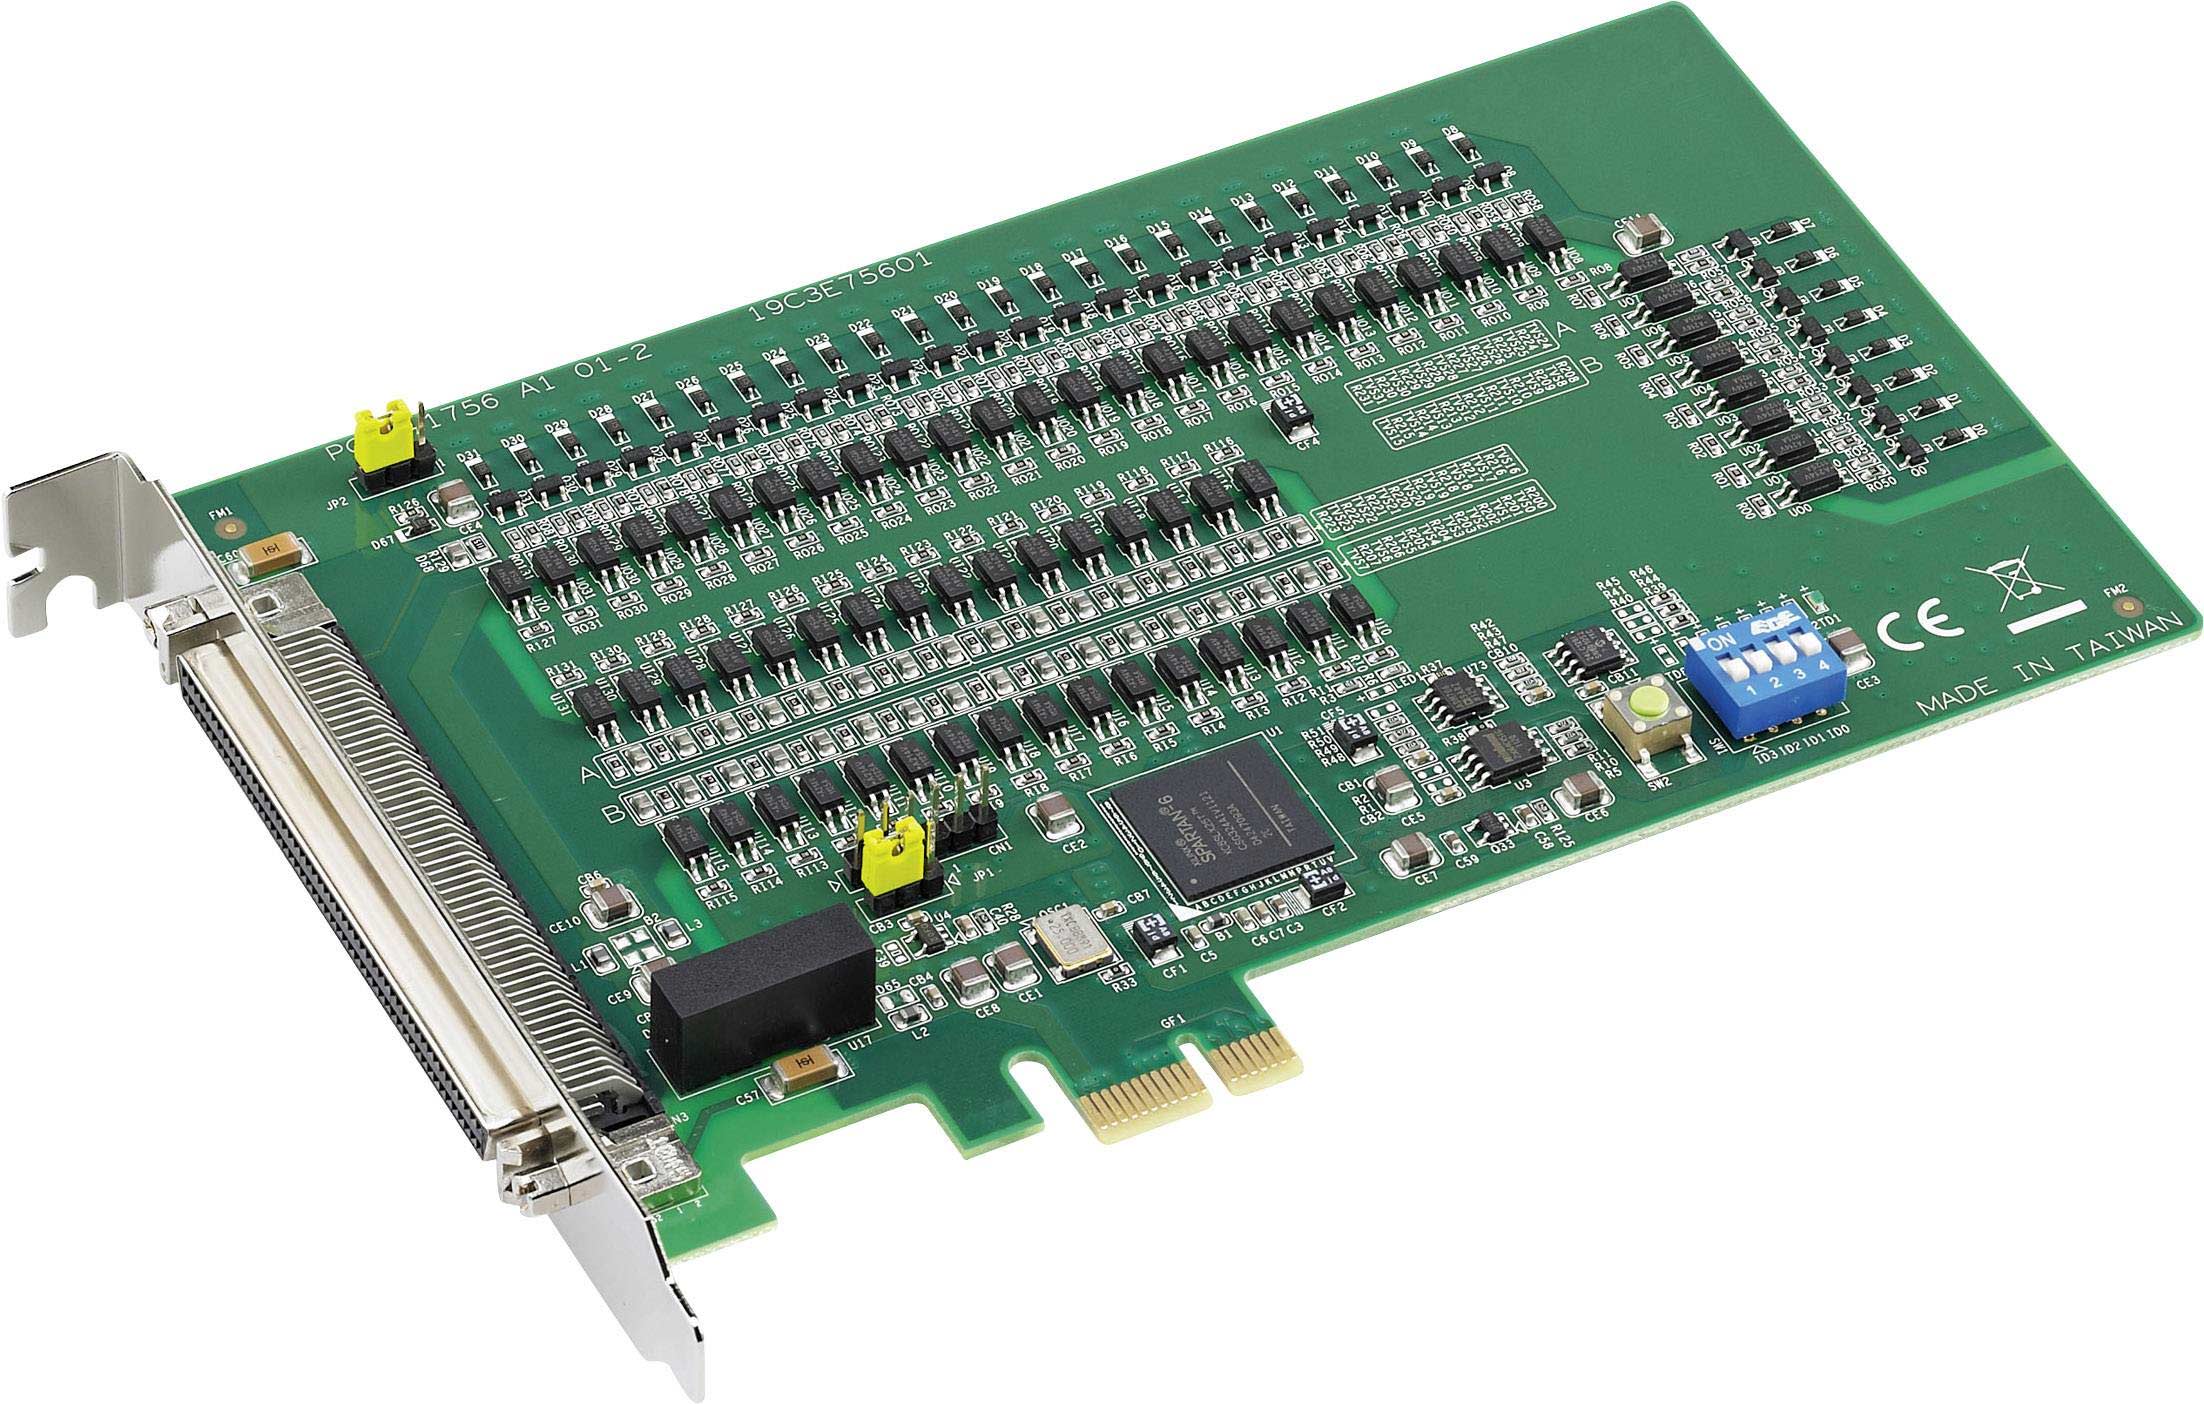 ADVANTECH Isolated Digital I/O PCI Card PCI-1756 REV.A1 01-3 PCB-I-E-313